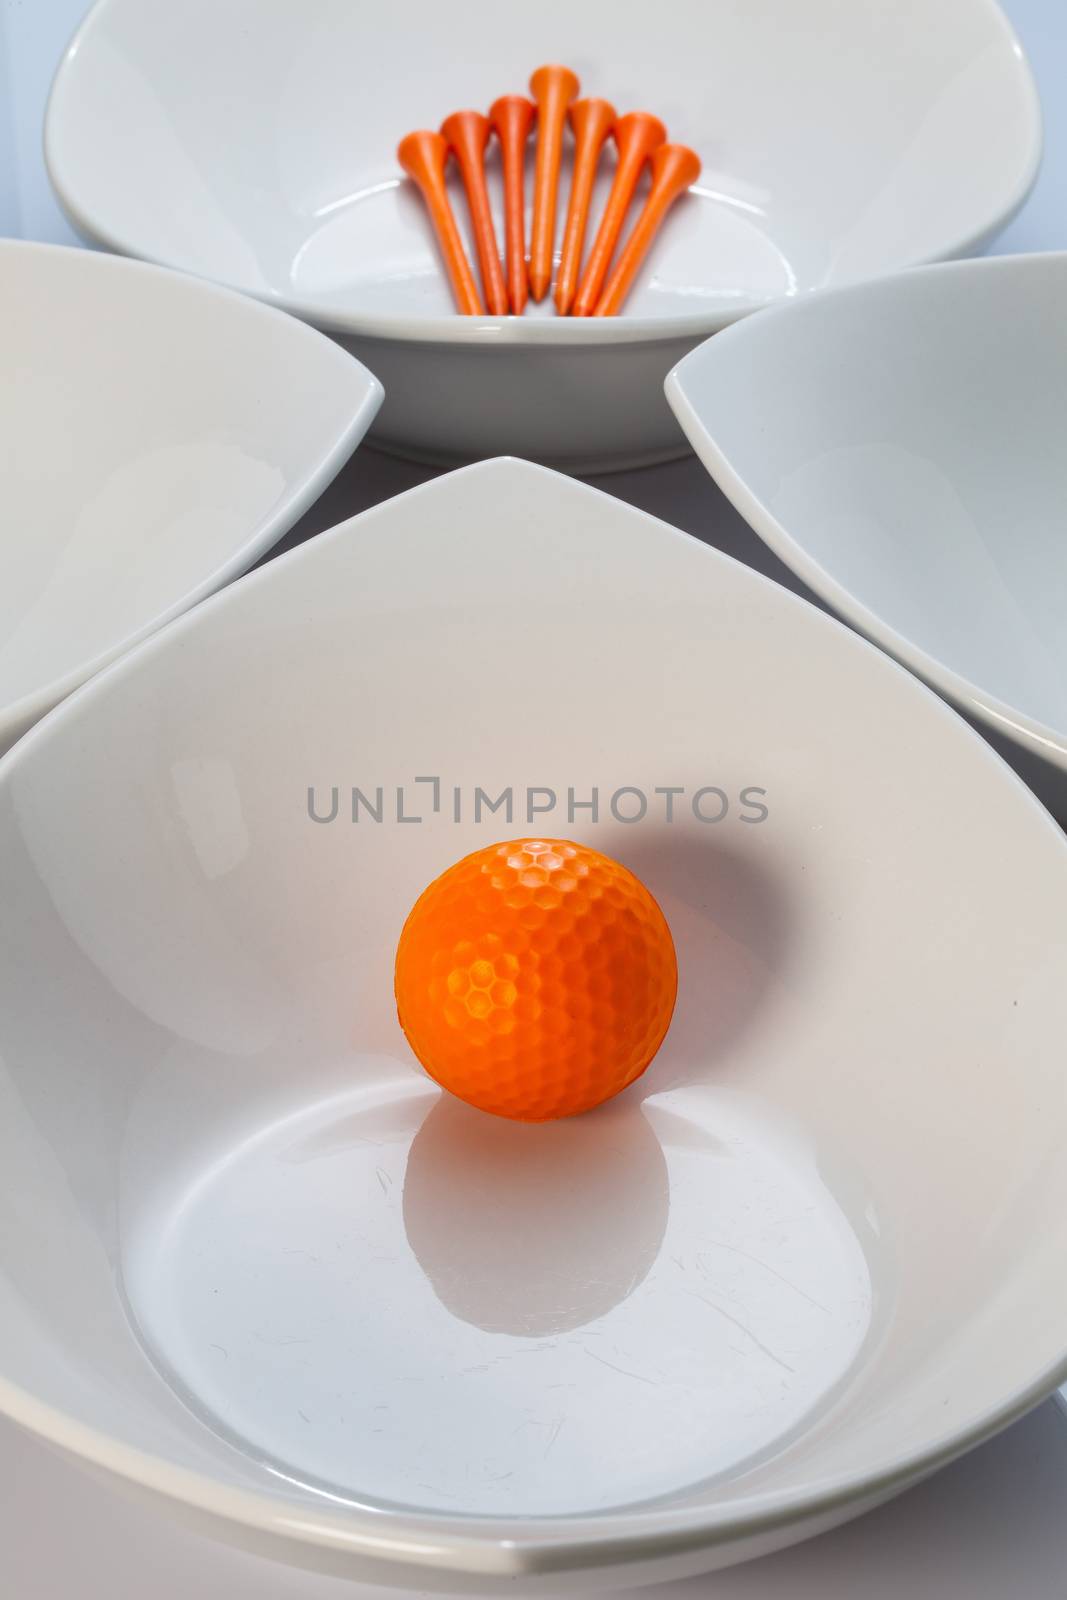 Four white ceramics bowls and golf ball